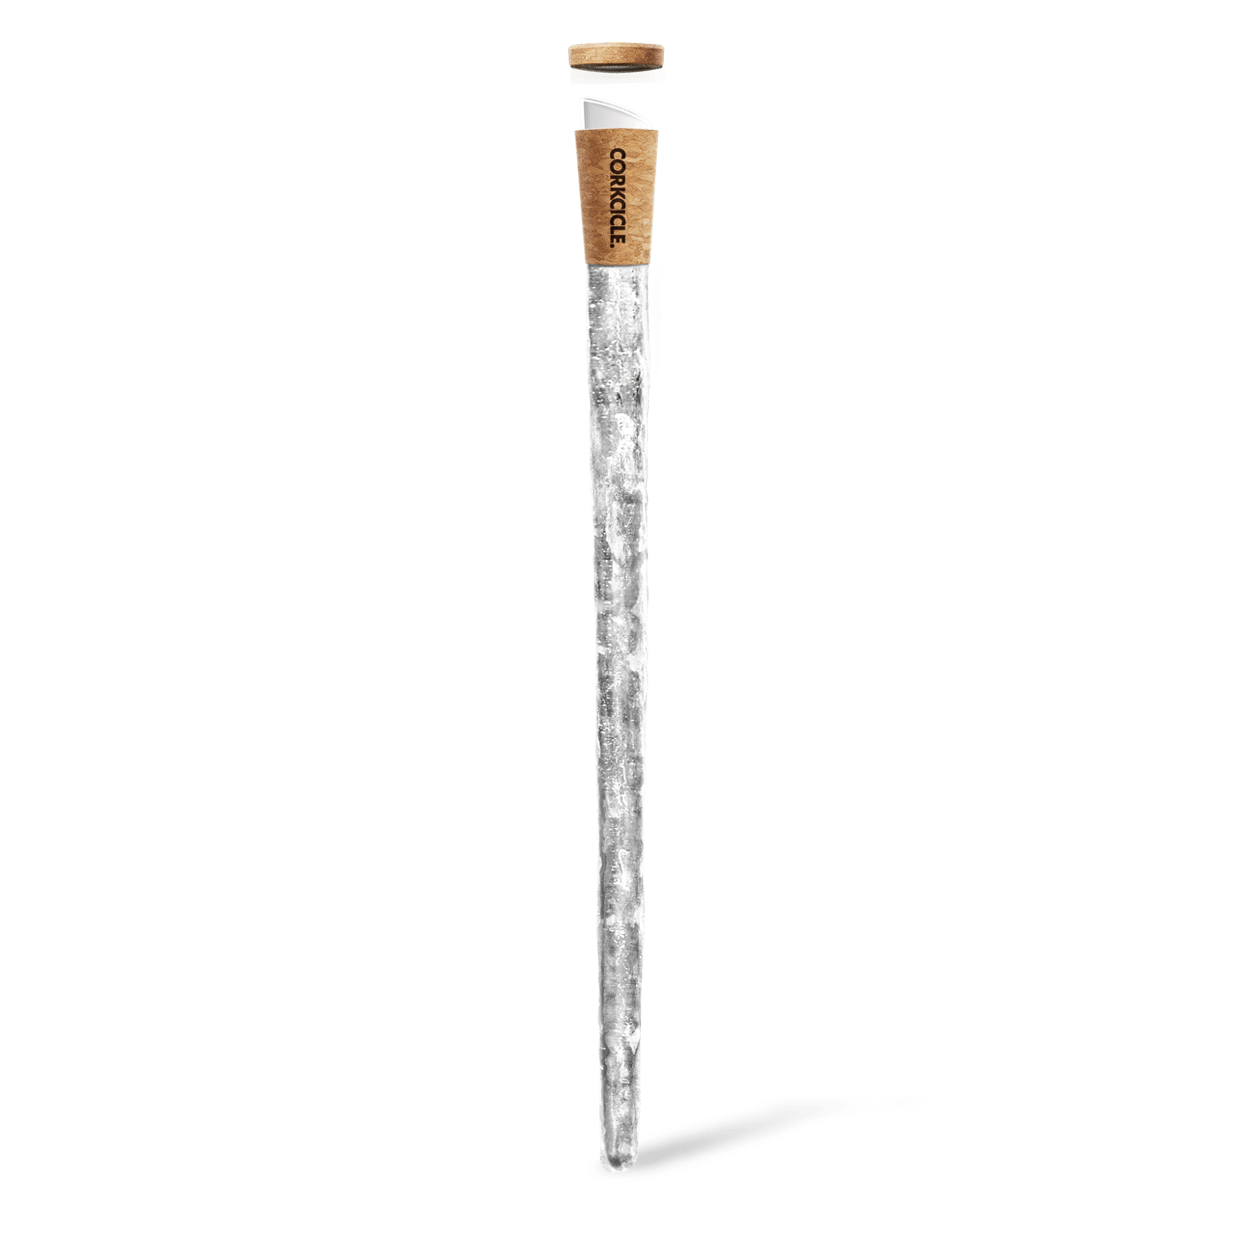 Best Beer Chiller Sticks: How Do Drink Bottle Cooler Sticks Work?